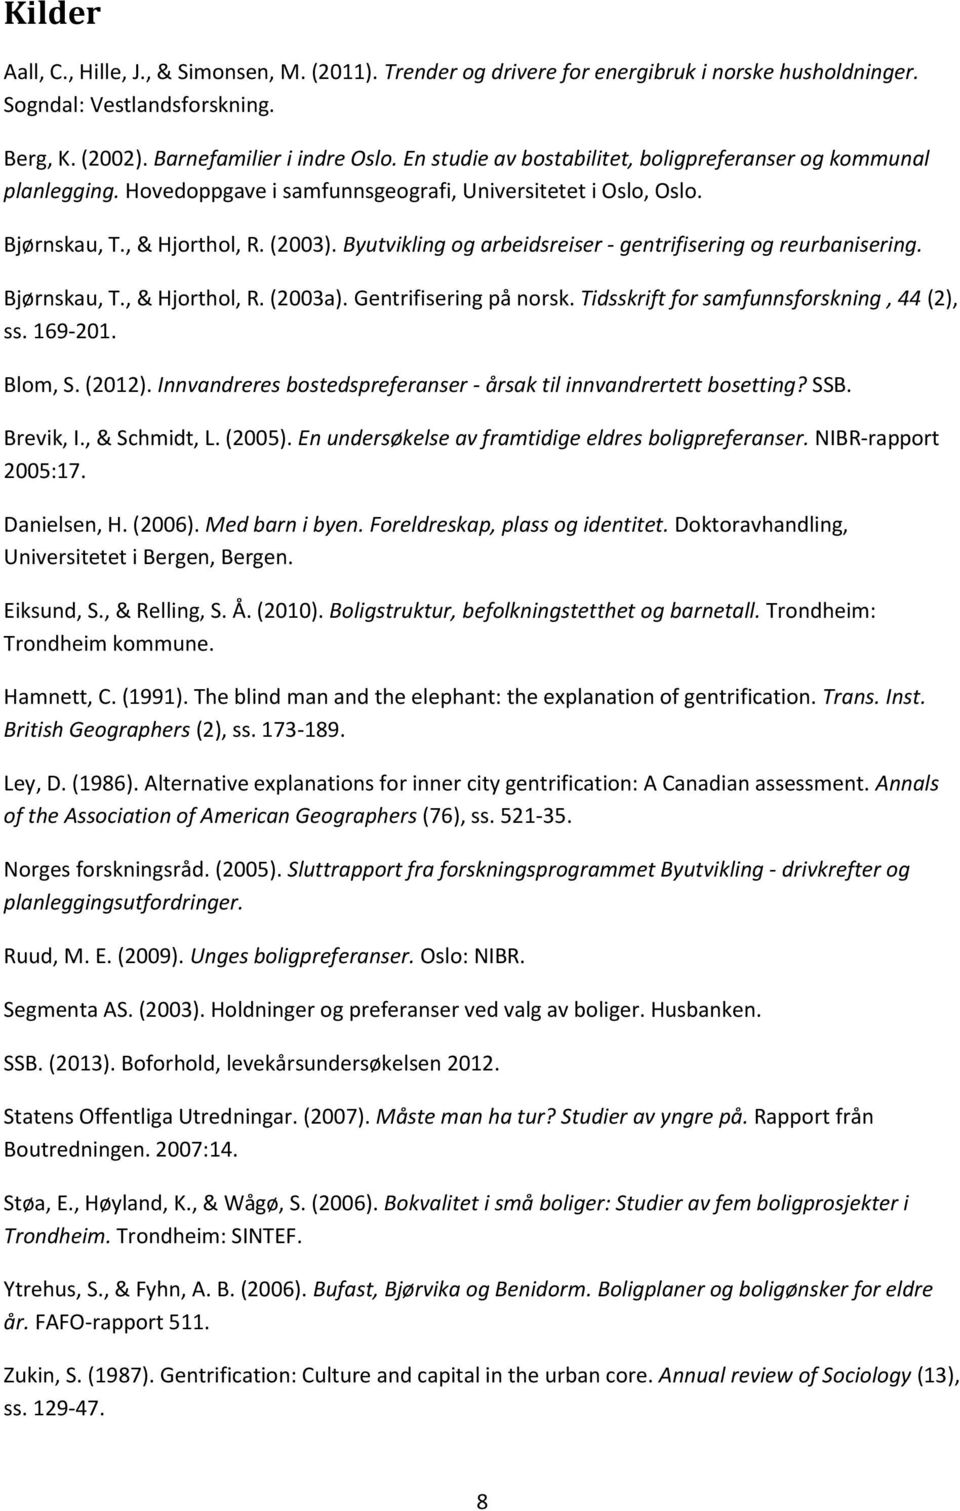 Byutvikling og arbeidsreiser - gentrifisering og reurbanisering. Bjørnskau, T., & Hjorthol, R. (2003a). Gentrifisering på norsk. Tidsskrift for samfunnsforskning, 44 (2), ss. 169-201. Blom, S. (2012).